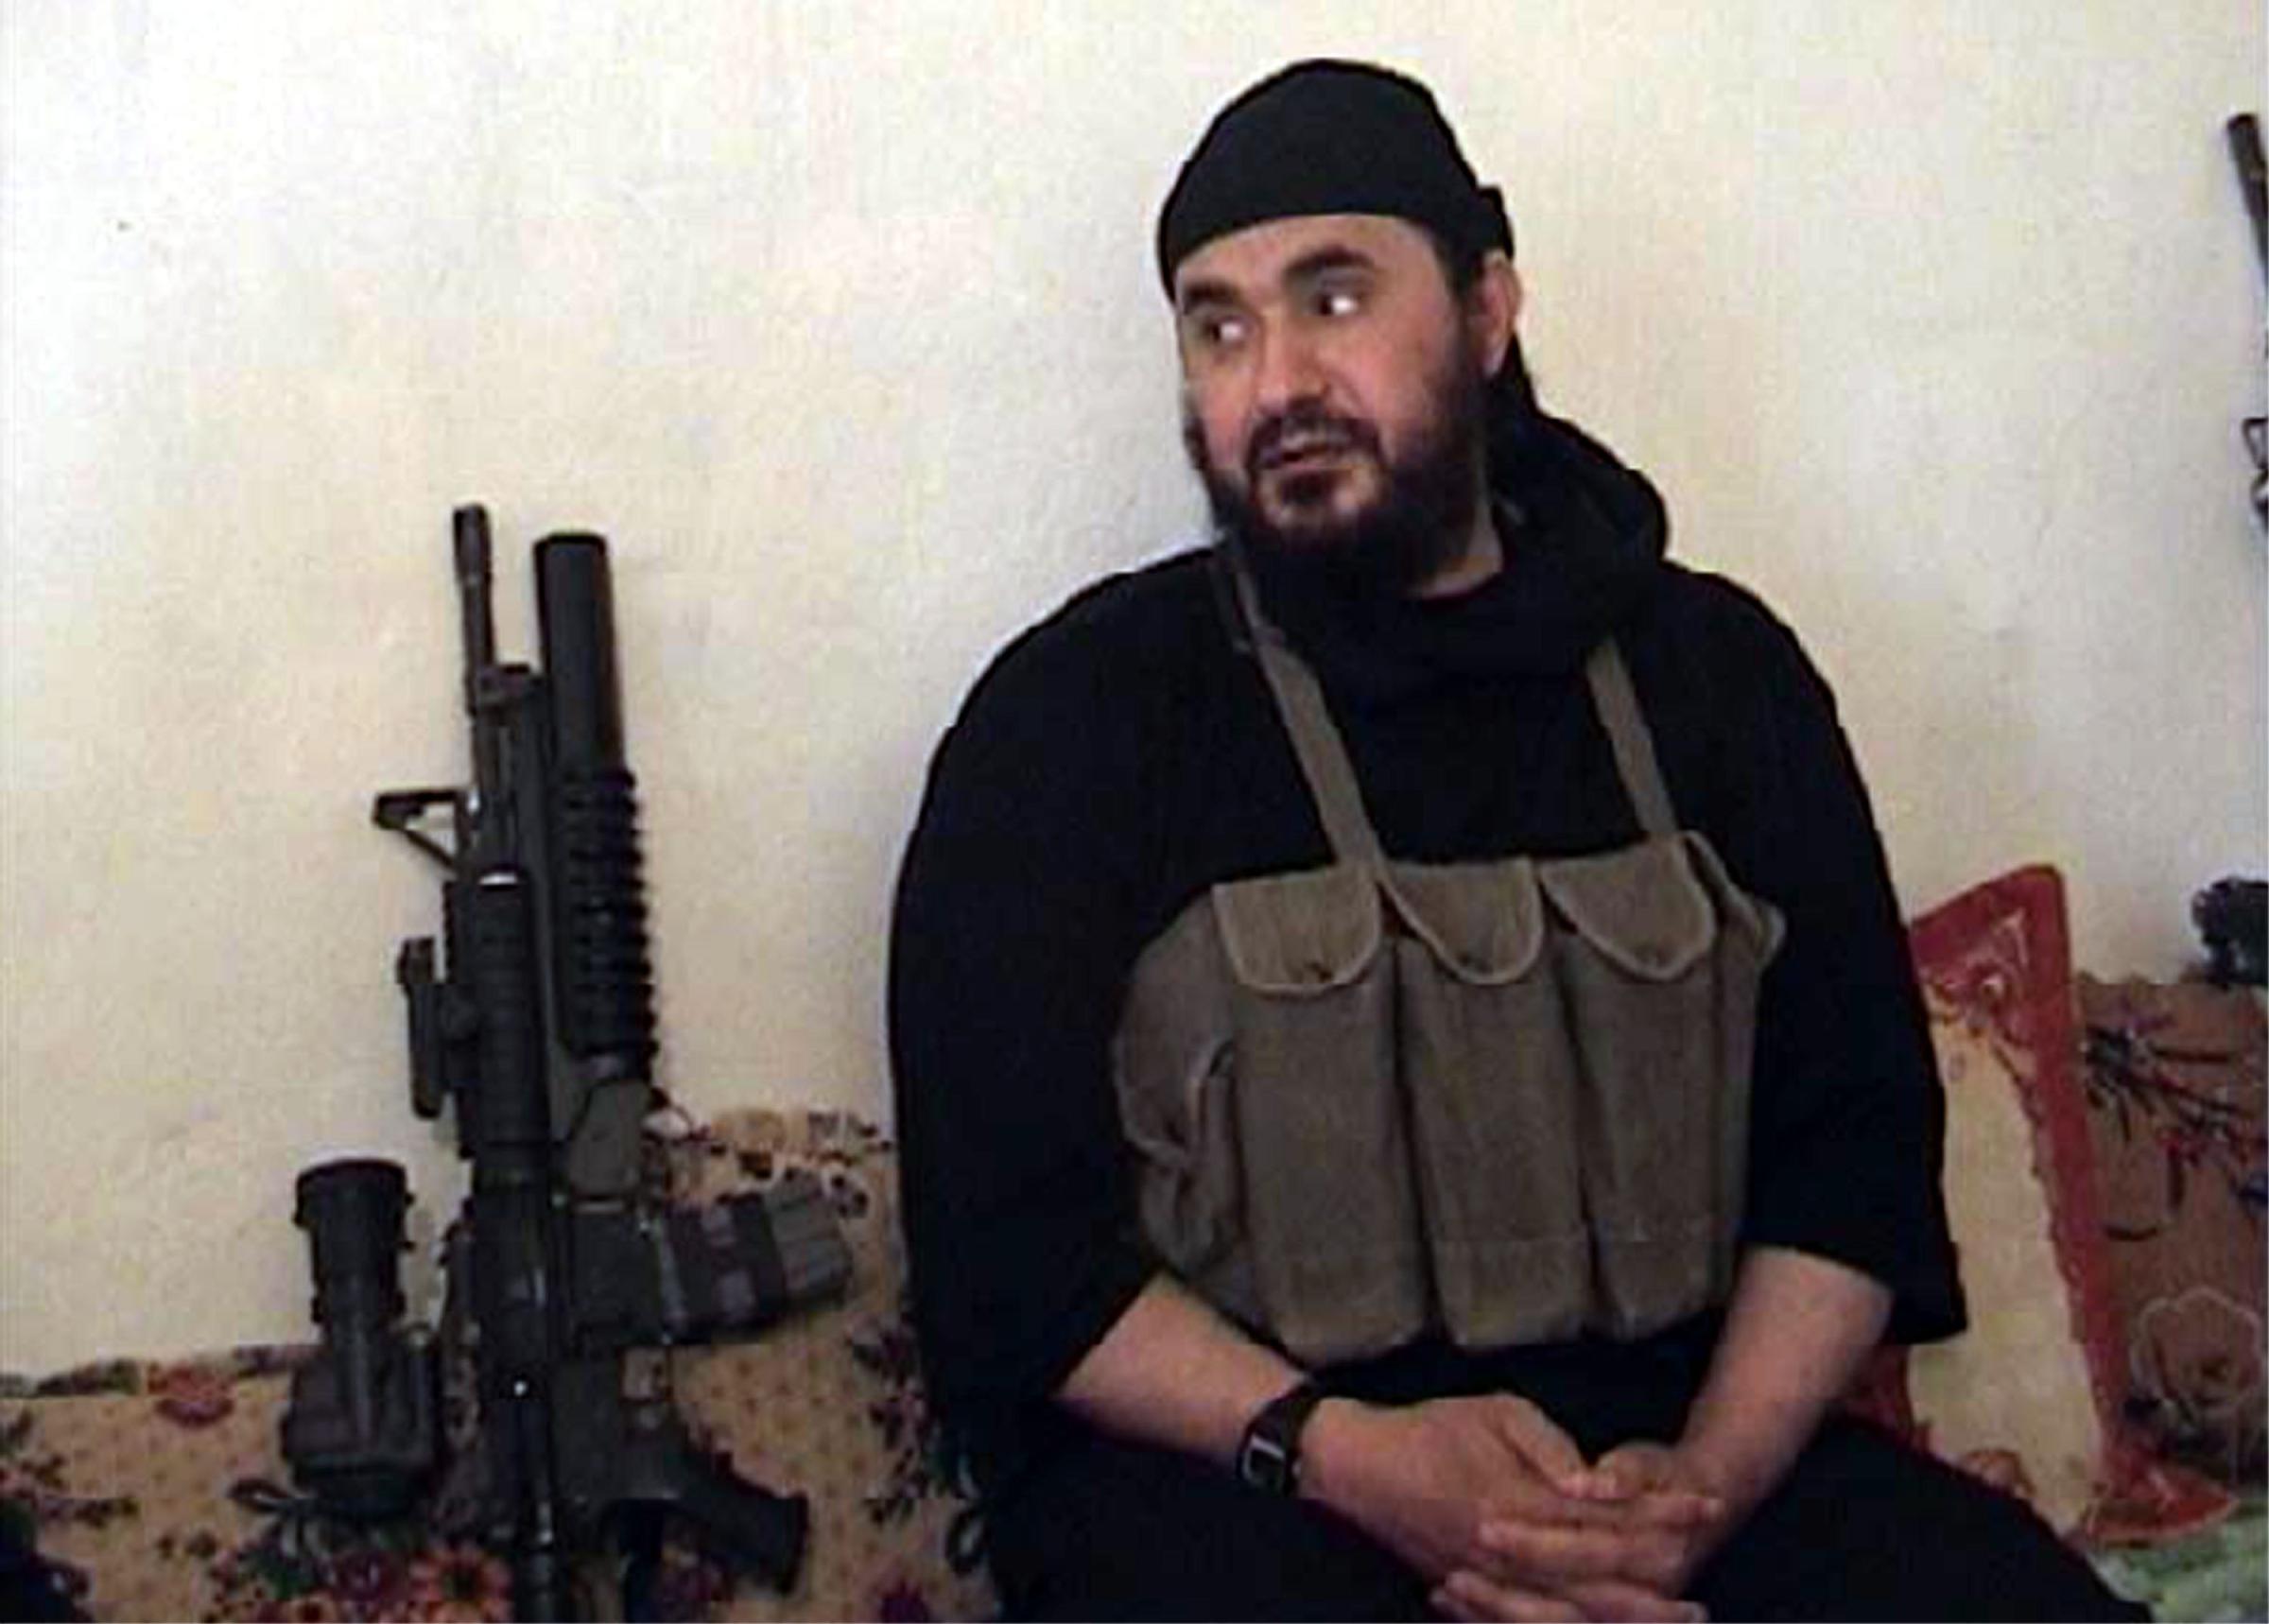 Terrorists Abu Musab al-Zarqawi